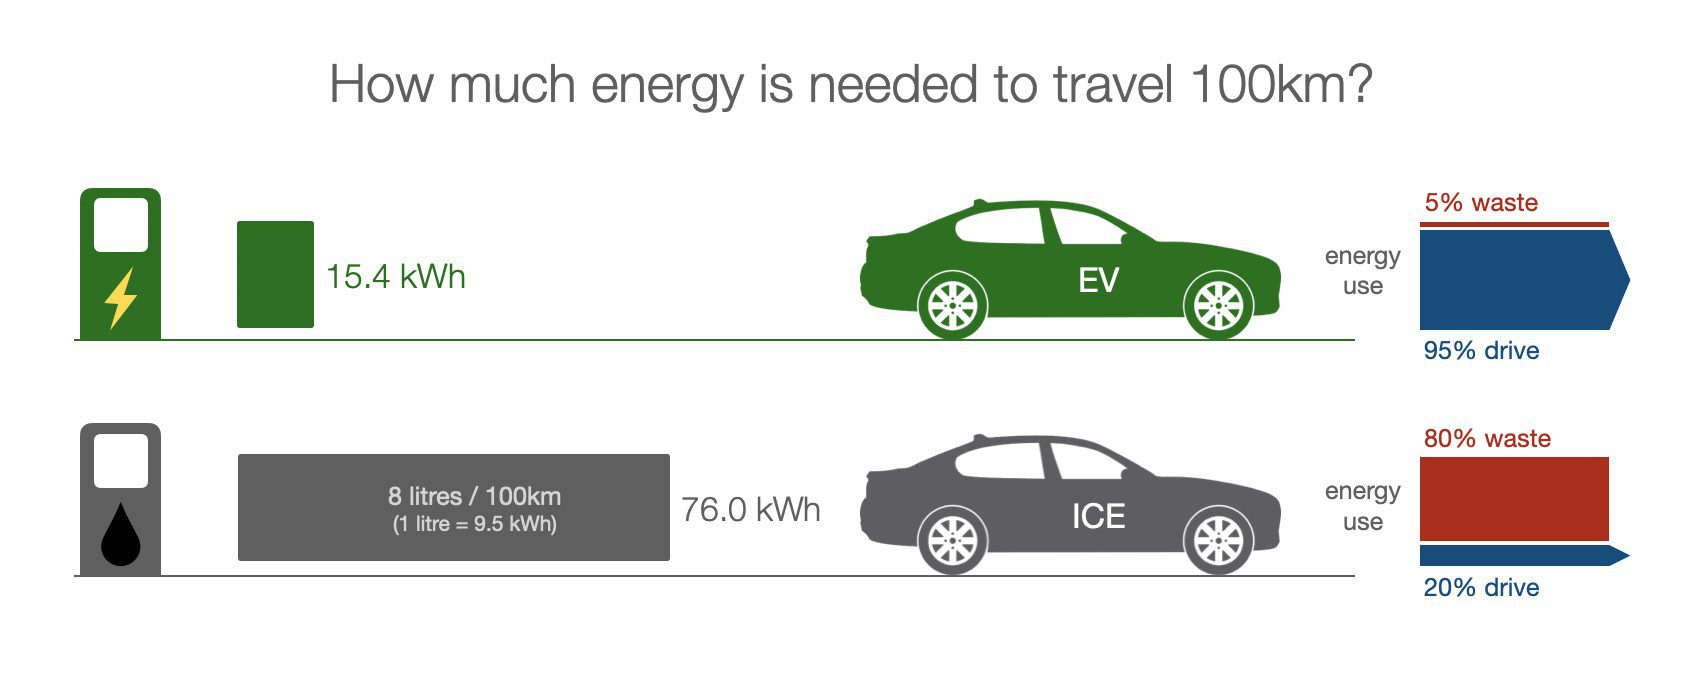 Electric vehicle energy needs